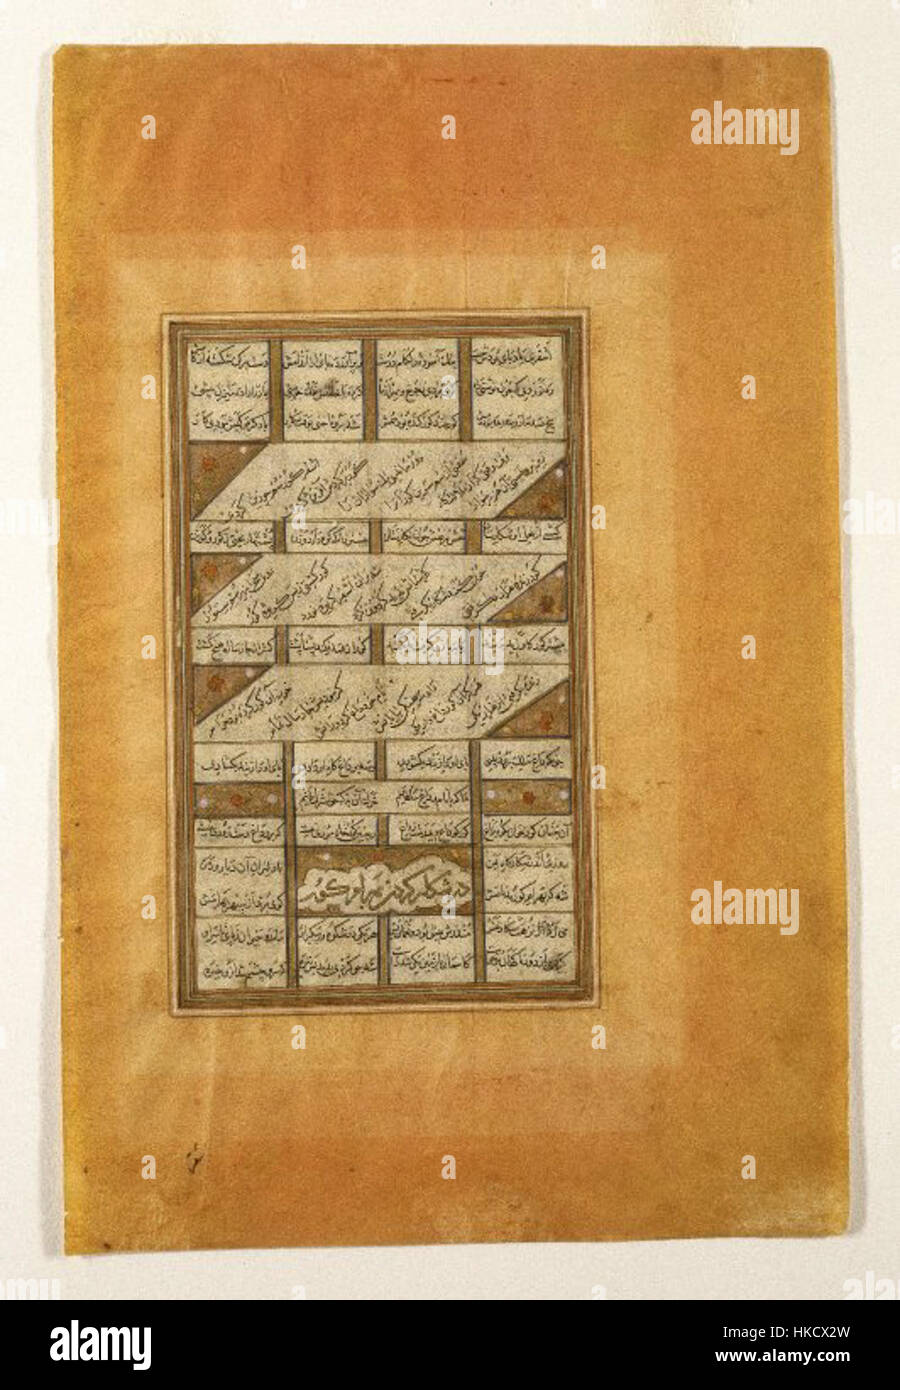 Brooklyn Museum Bahram Gur auf der Jagd-Seite aus der Haft Paykar (sieben Porträts) aus einer Handschrift von Chadidscha (Quintett) von Nizami (gest. 1209) Stockfoto